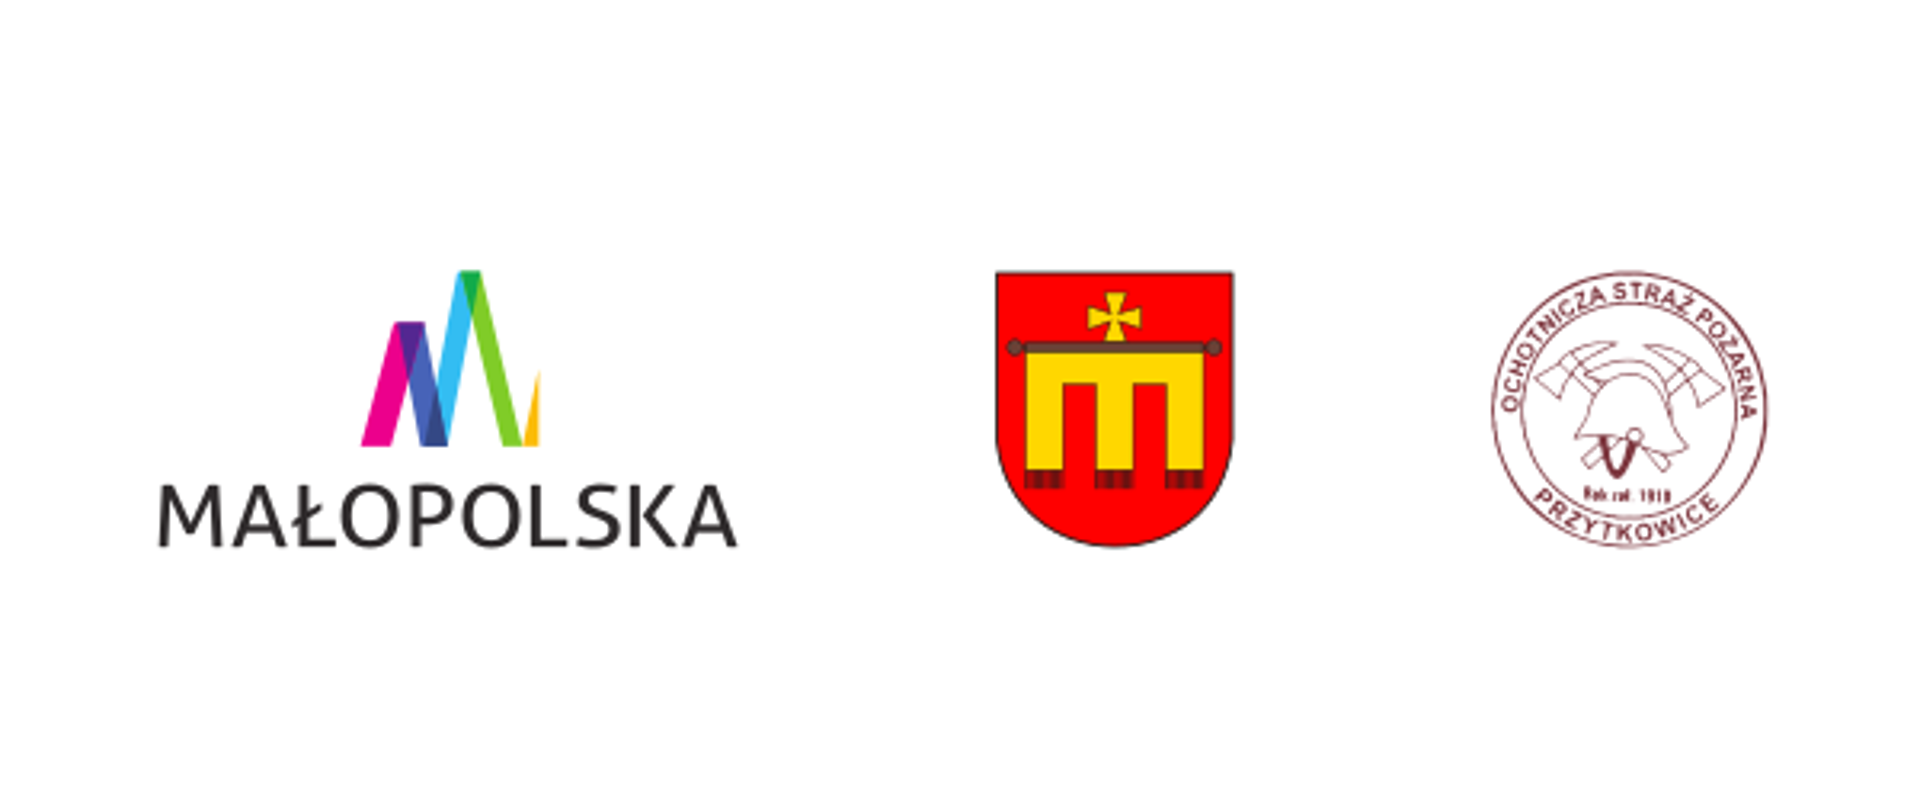 Od lewej> logo Małopolski, herb Kalwarii Zebrzydowskiej, logo OSP Przytkowice